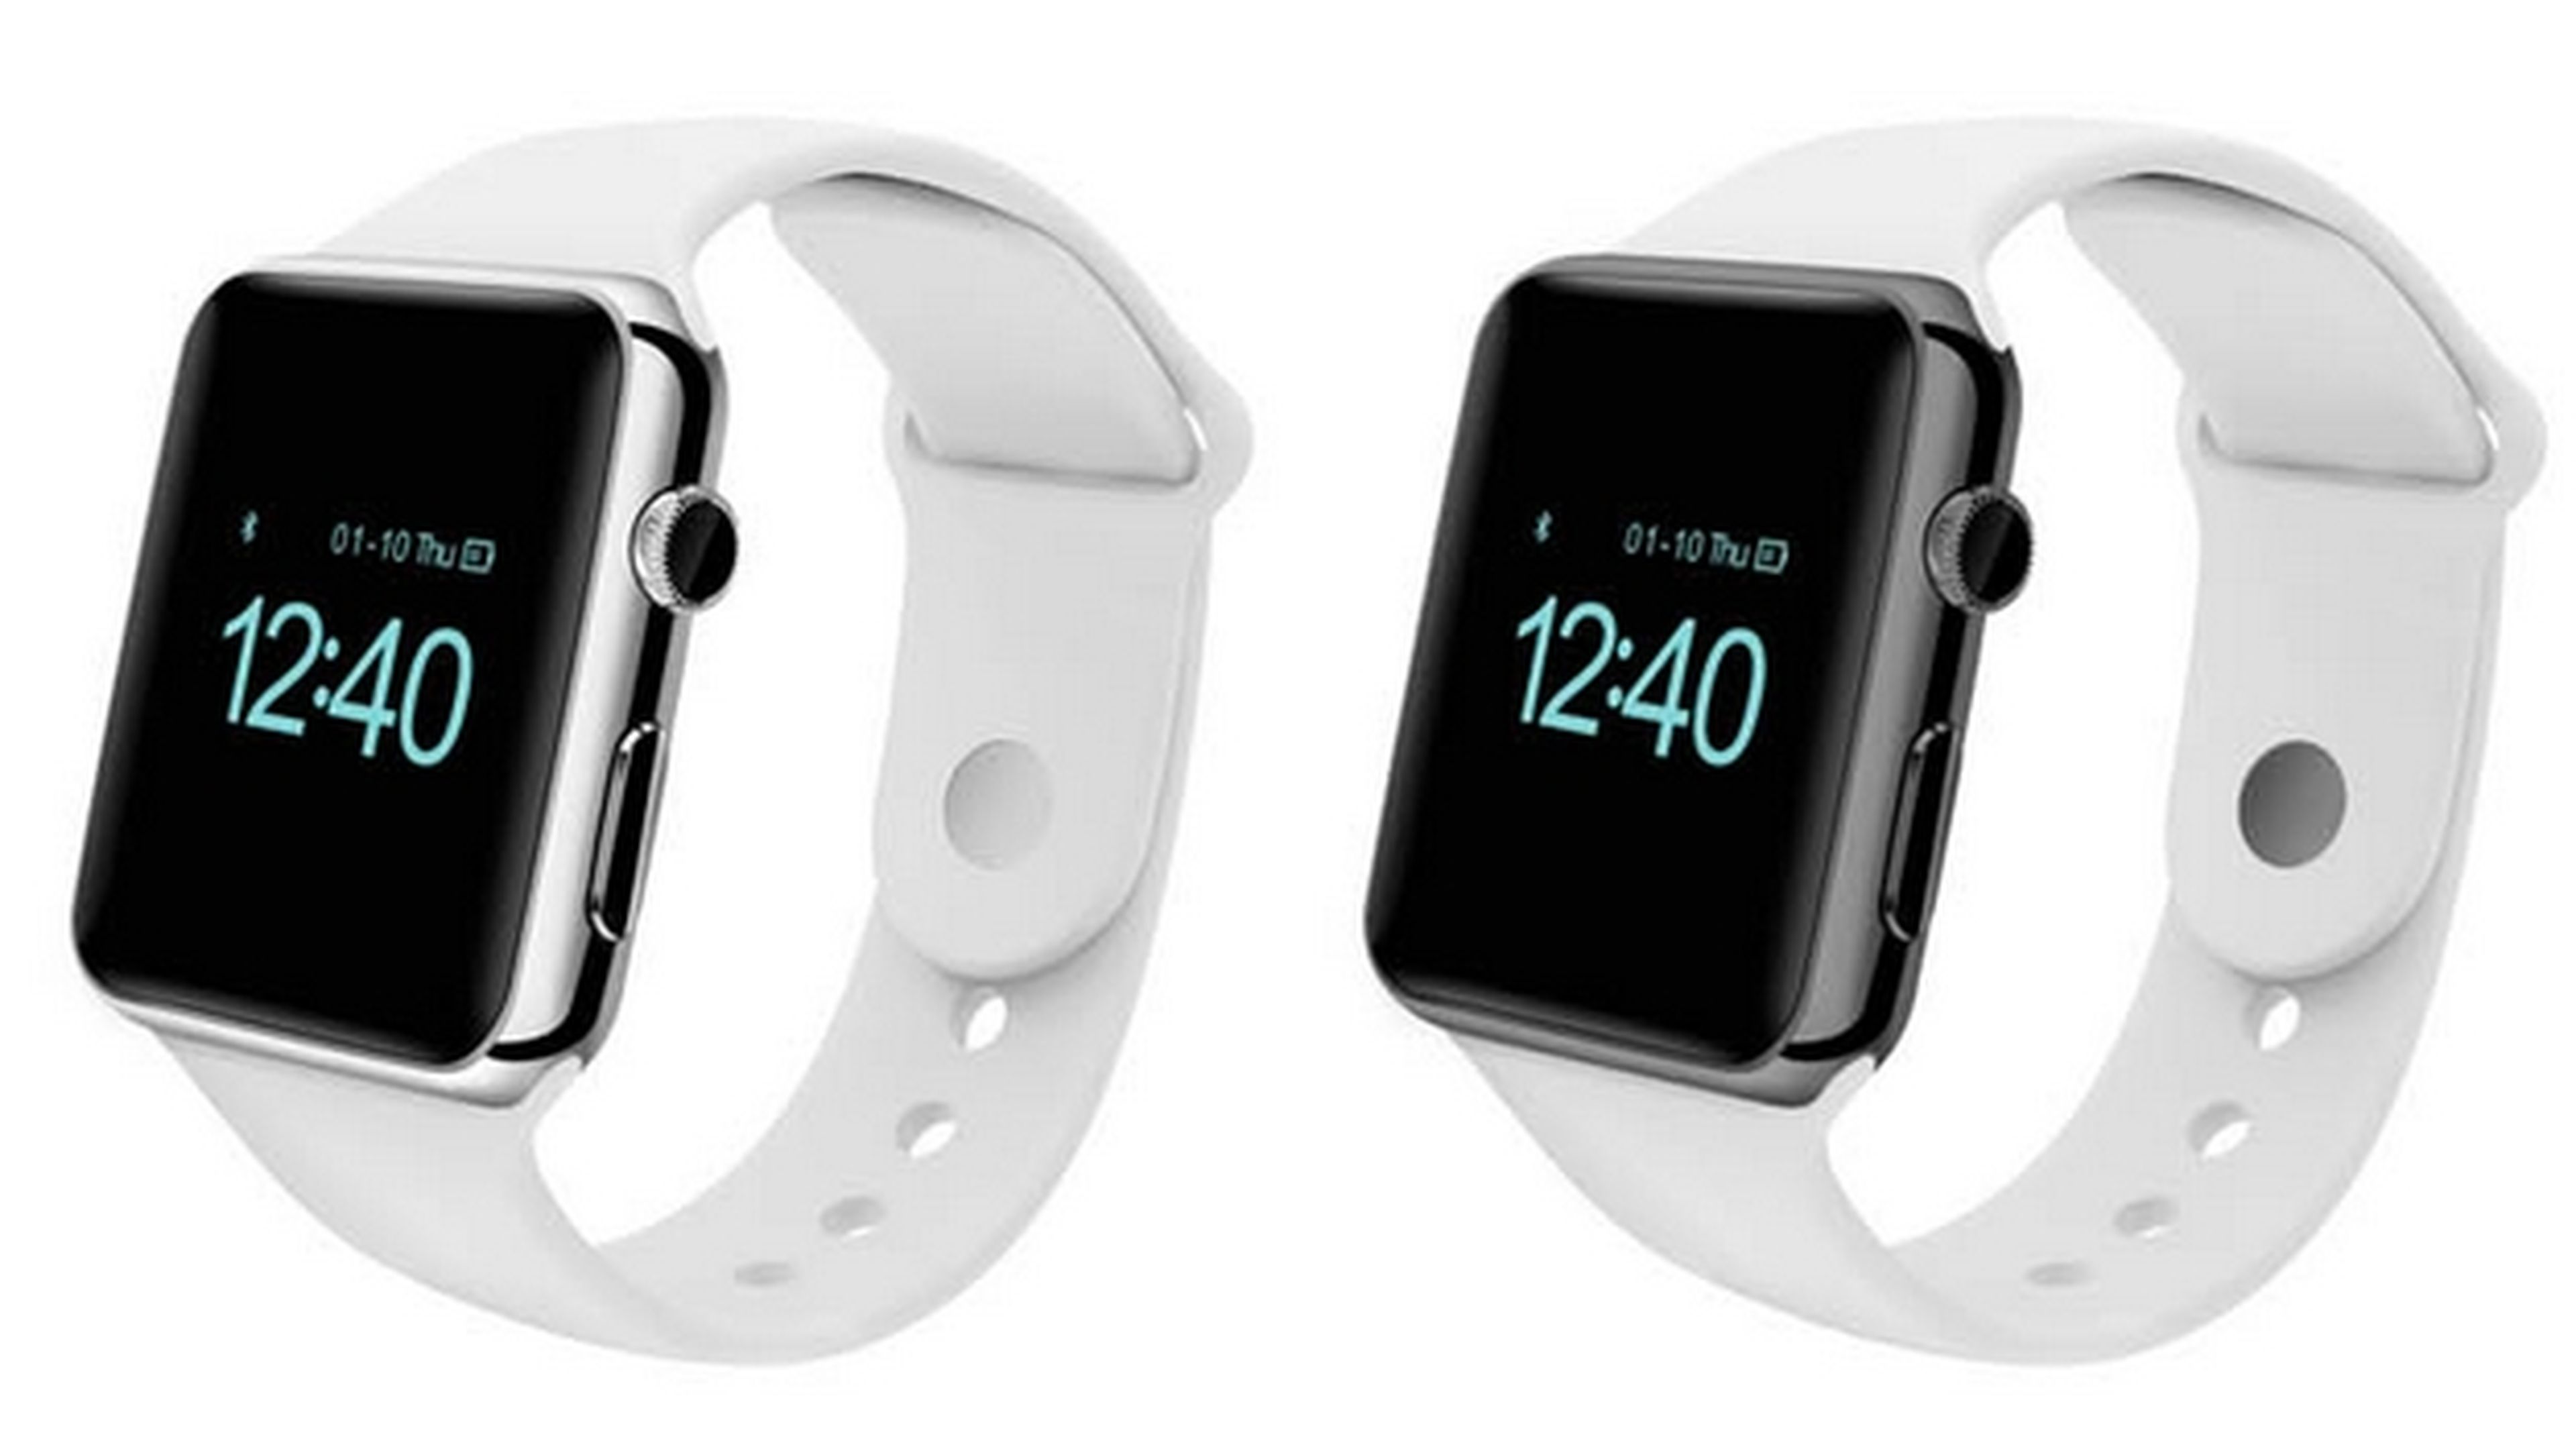 Ya está aquí Aiwatch, el clon chino del smartwatch Apple Watch.